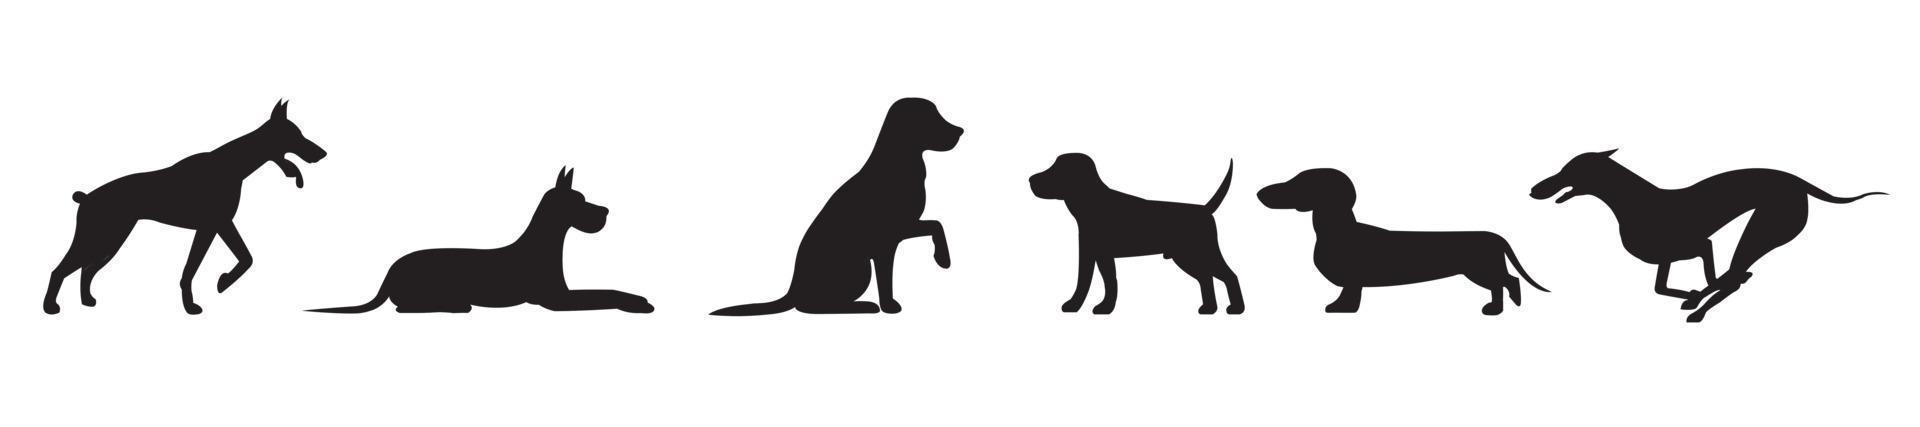 Set mit Silhouetten eines Hundes in verschiedenen Positionen isoliert vektor